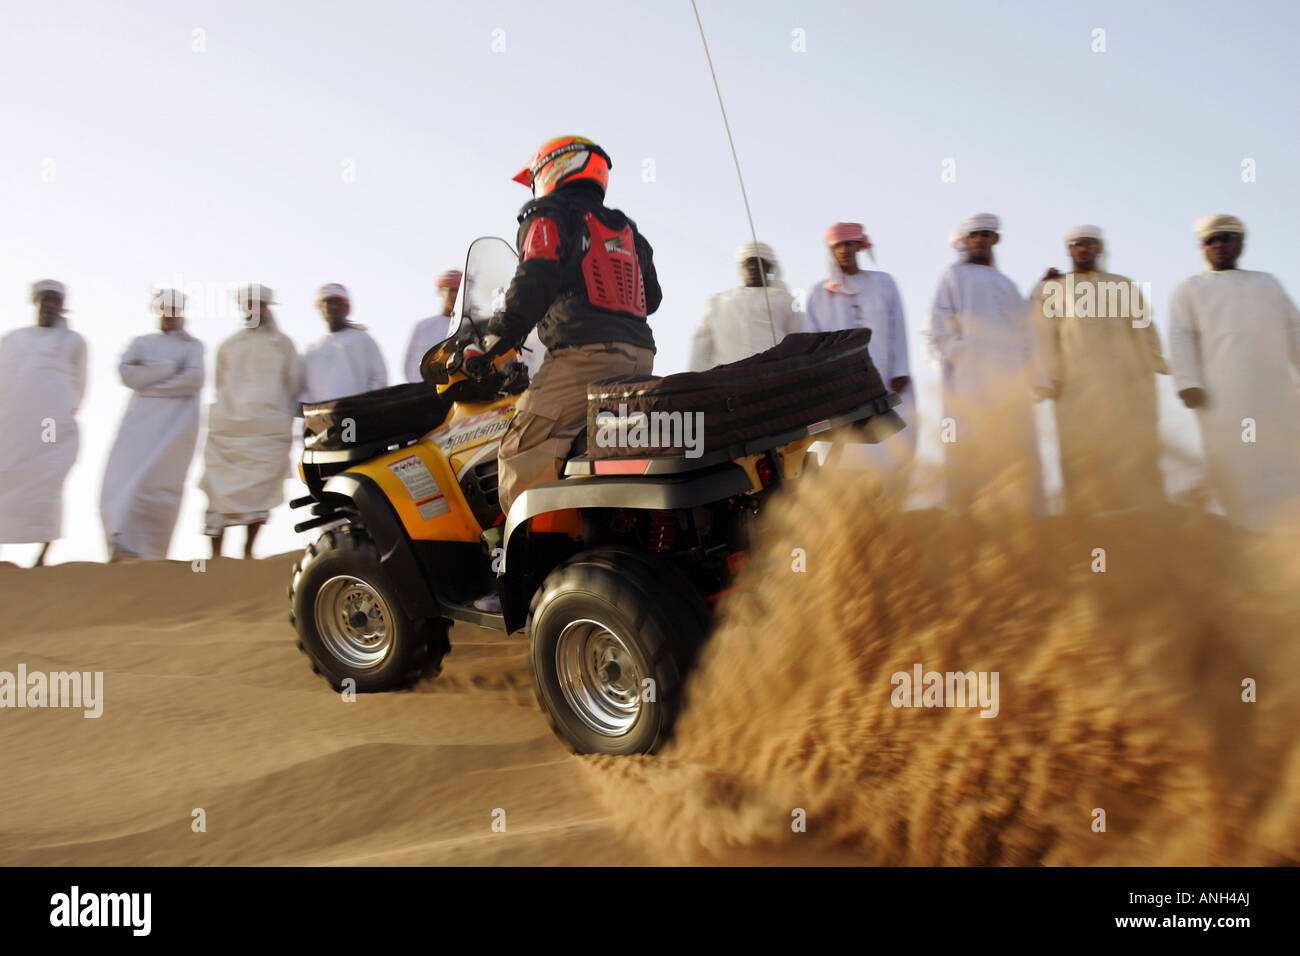 Gruppe von arabischen Männern in der Wüste einen Quad-Fahrer beobachten Stockfoto